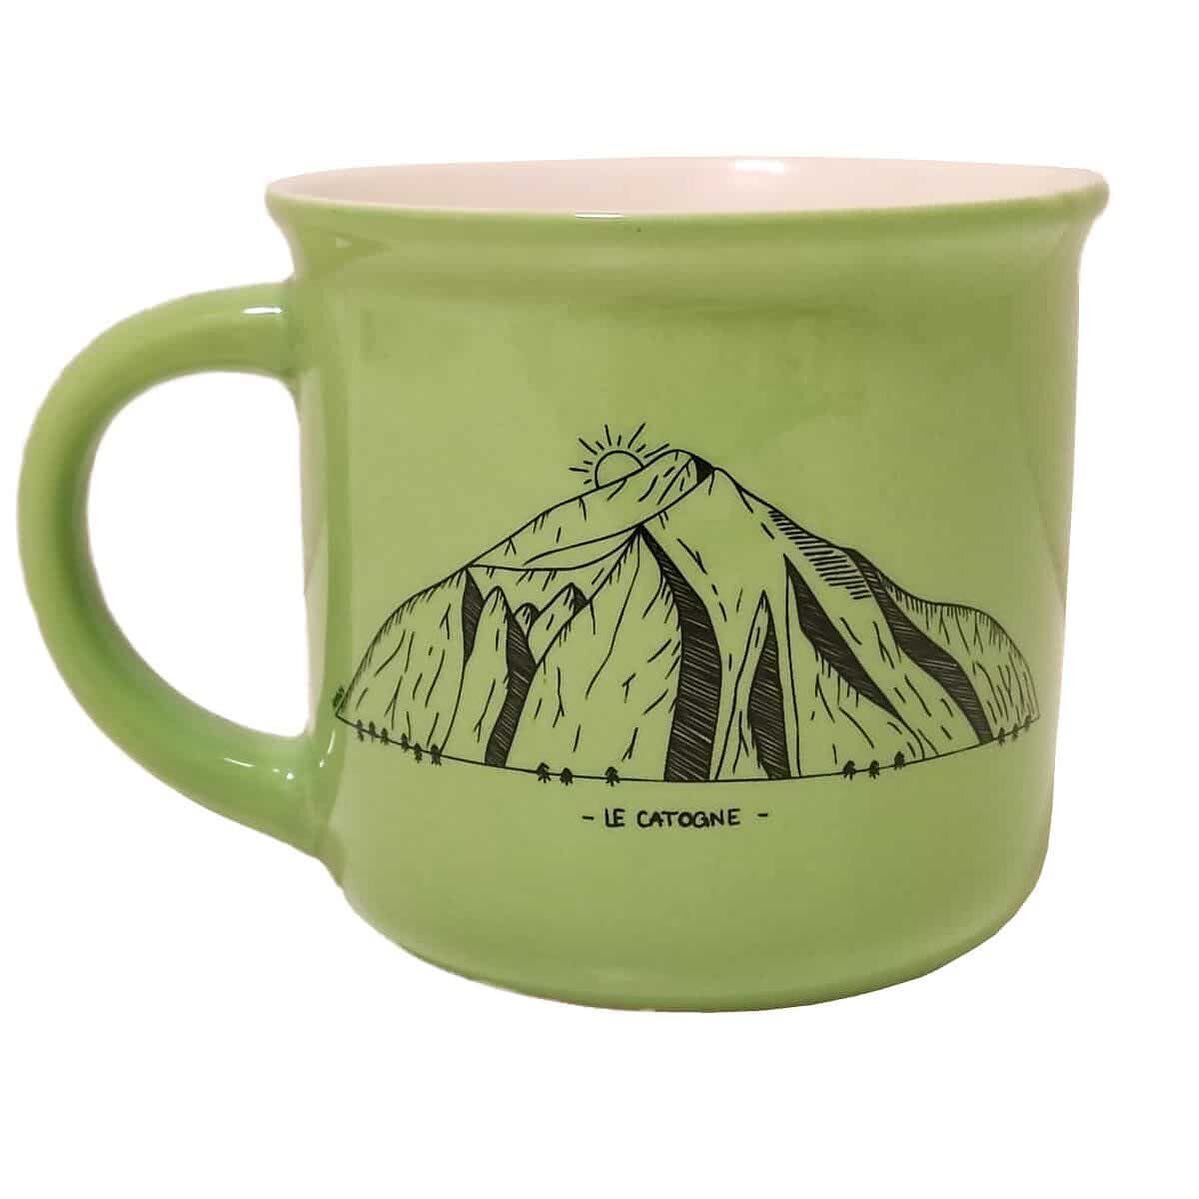 If you love coffee, mountains, and Switzerland, this new mug might just be your new favorite. 
.

Si vous aimez le caf&eacute;, les montagnes et la Suisse, ce nouveau mug pourrait bien &ecirc;tre votre nouveau favori.
.
.
.
.
.
@amtdesign #swissart #